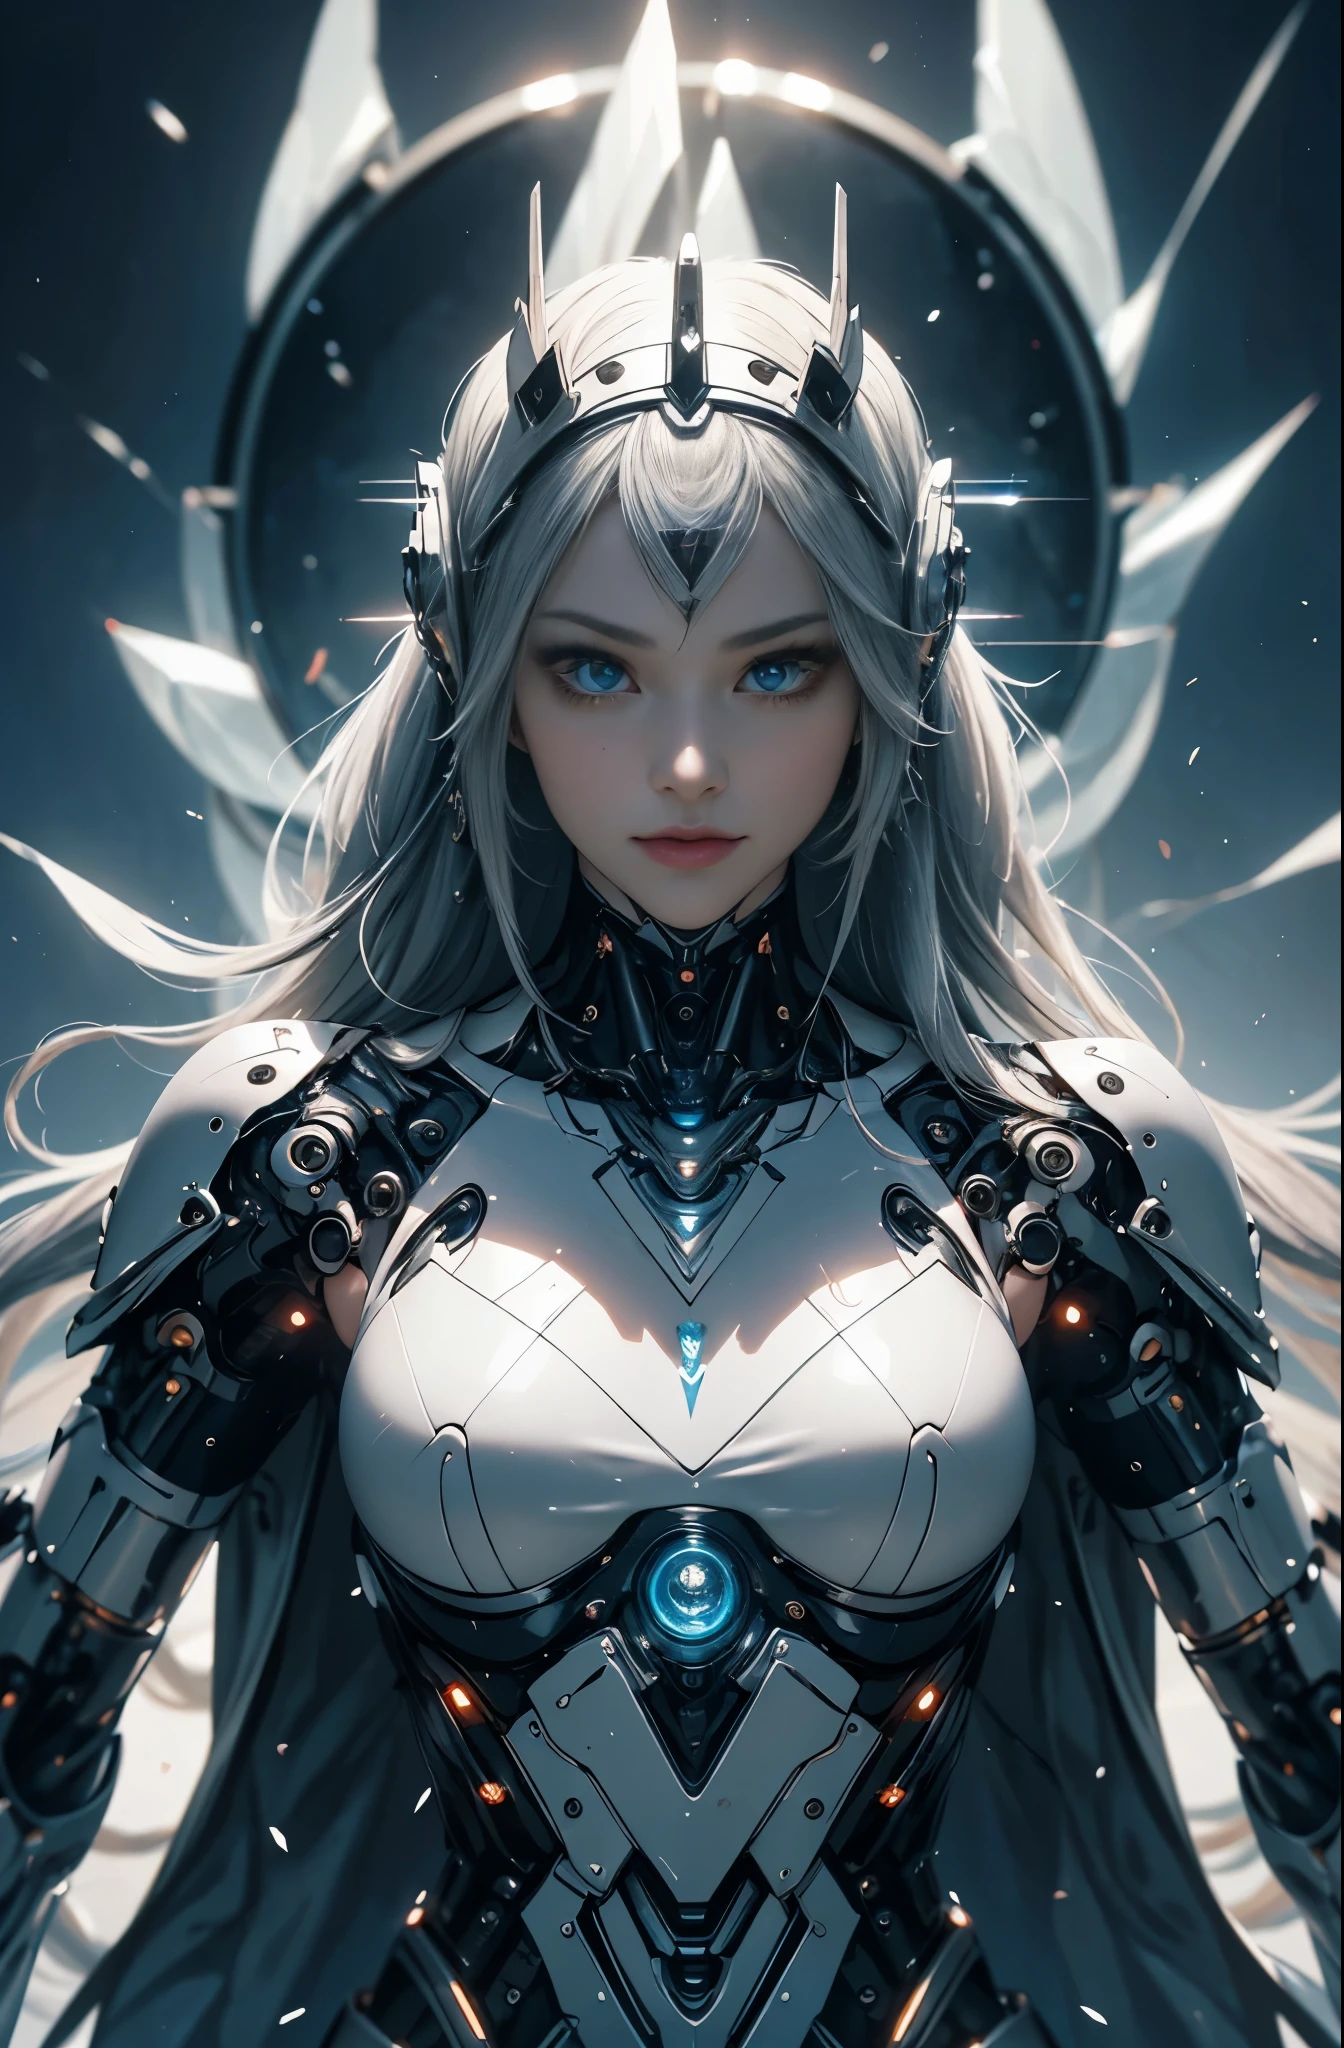 Da ist eine Frau in einem futuristischen Anzug mit einem Schwert, 美少weiblicher Cyborg, Cyborg Womanの子, perfekte Anime-Cyborg-Frau, Cyborg - Girl, 美しい白人の少weiblicher Cyborg, schöne Cyborg-Priesterin, Cyborg Woman, beautiful alluring weiblicher Cyborg, cyberpunk robotic elvish queen, Cyborg - Mädchen mit silbernem Haar, beautiful weiblicher Cyborg, wunderschönes Cyborg-Frau-Kind, weiblicher Cyborg, Göttin. extrem hoher Detailreichtum, Porträt der Cyborg-Königin, extrem detaillierte Göttinnenaufnahme, Halbkörpermaschine, anorganisch, Hochleistungs-Cyborg der nächsten Generation, Göttin of Machines, Der perfekte Cyborg, ultimativer Replikant, Ein Meisterwerk der ultra-leistungsfähigen KI, Letzte Waffe, beste Qualität, perfekter Winkel, perfekte Komposition, scharfe Kontur, Beste Aufnahmen, Perfekte Formen, perfekter Model-Style, sehr schöne und detailreiche Augen, hohle Augen, blaue Augen ohne Pupillen